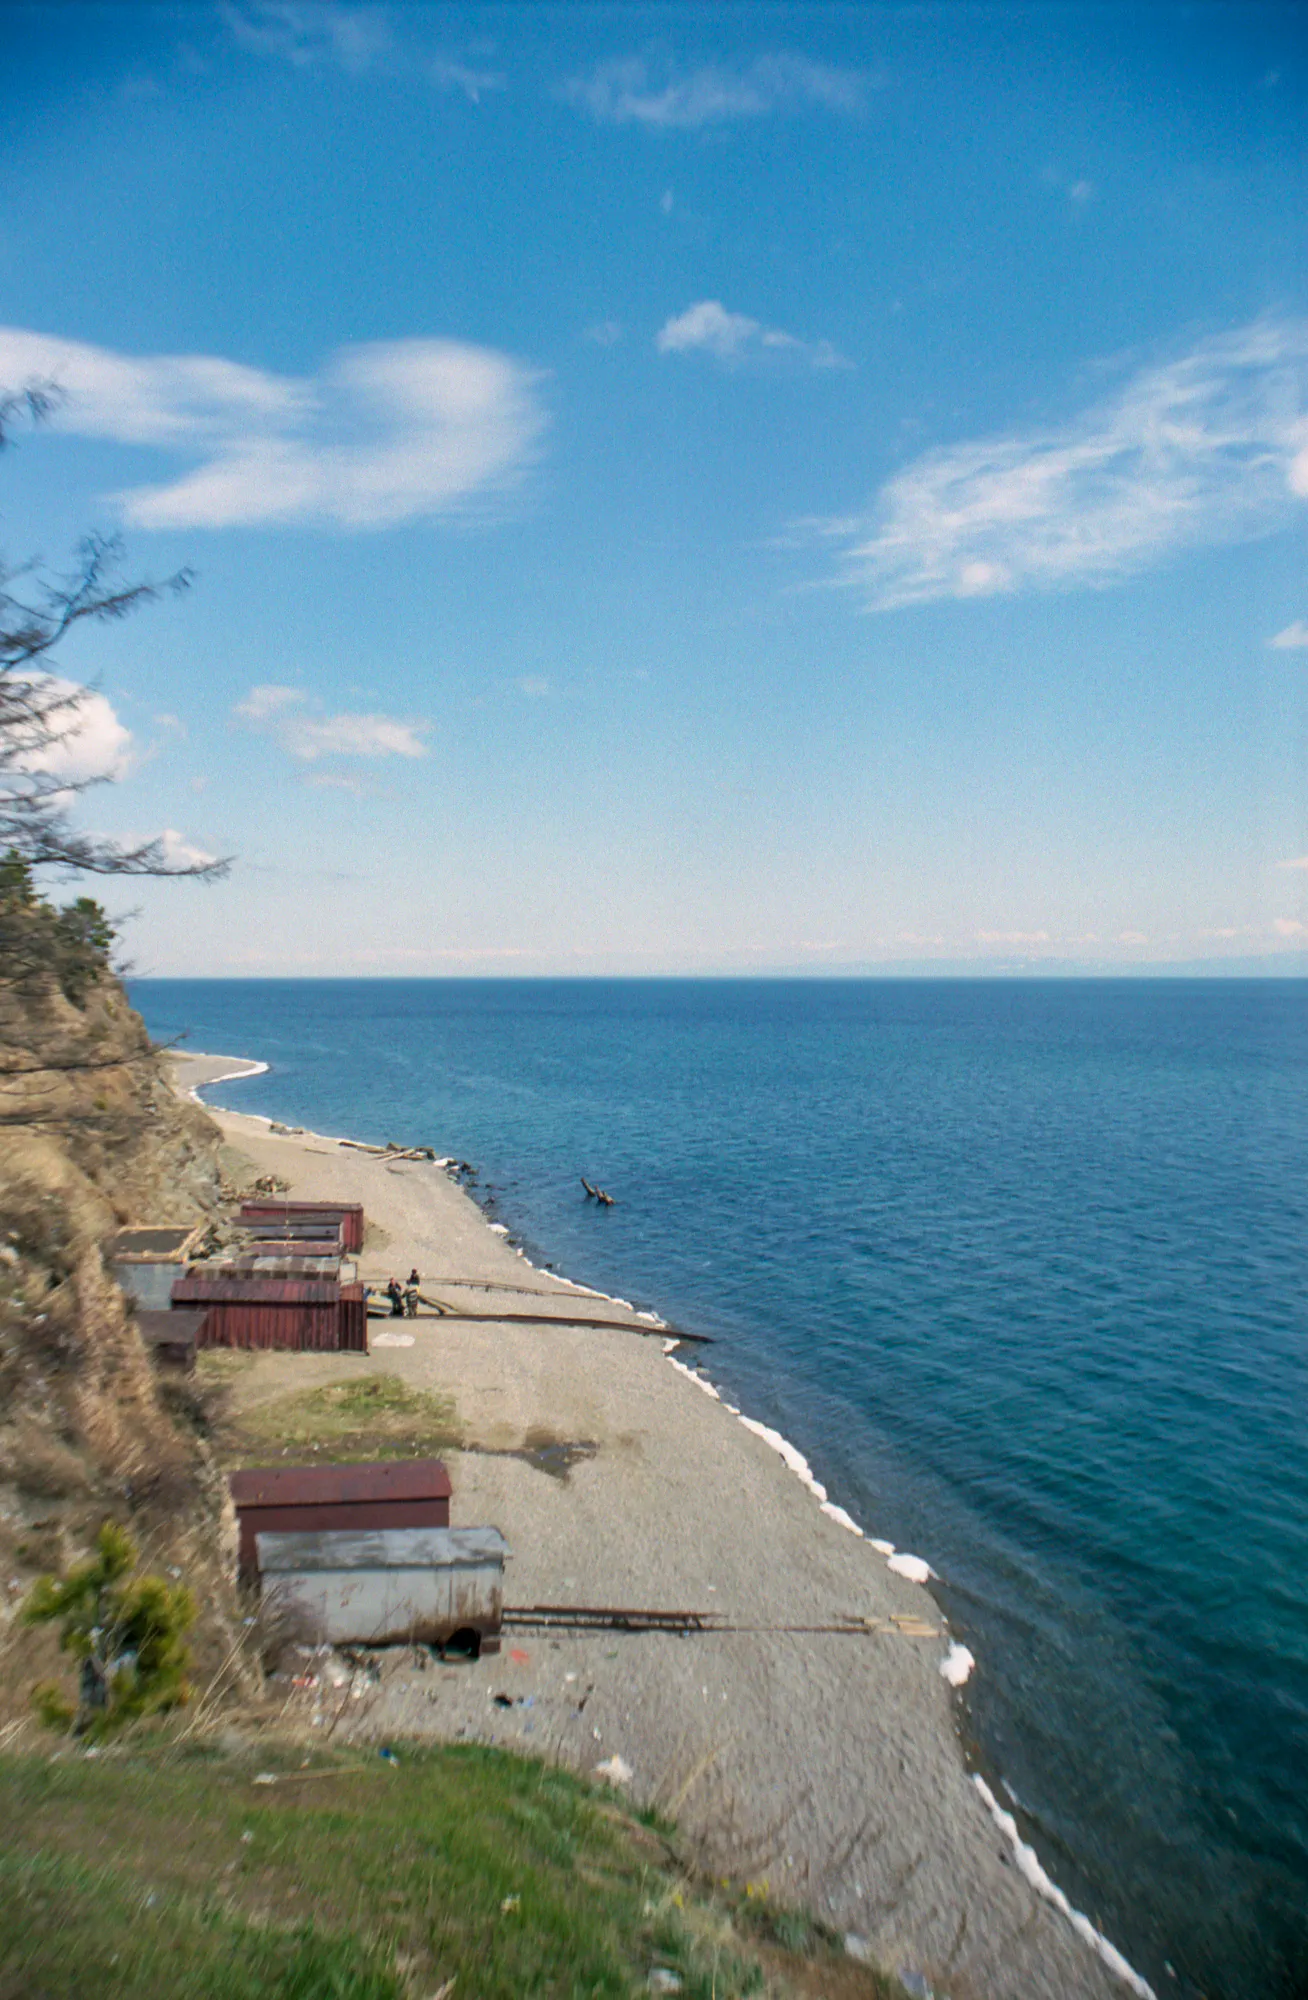 The Shore of Lake Baikal